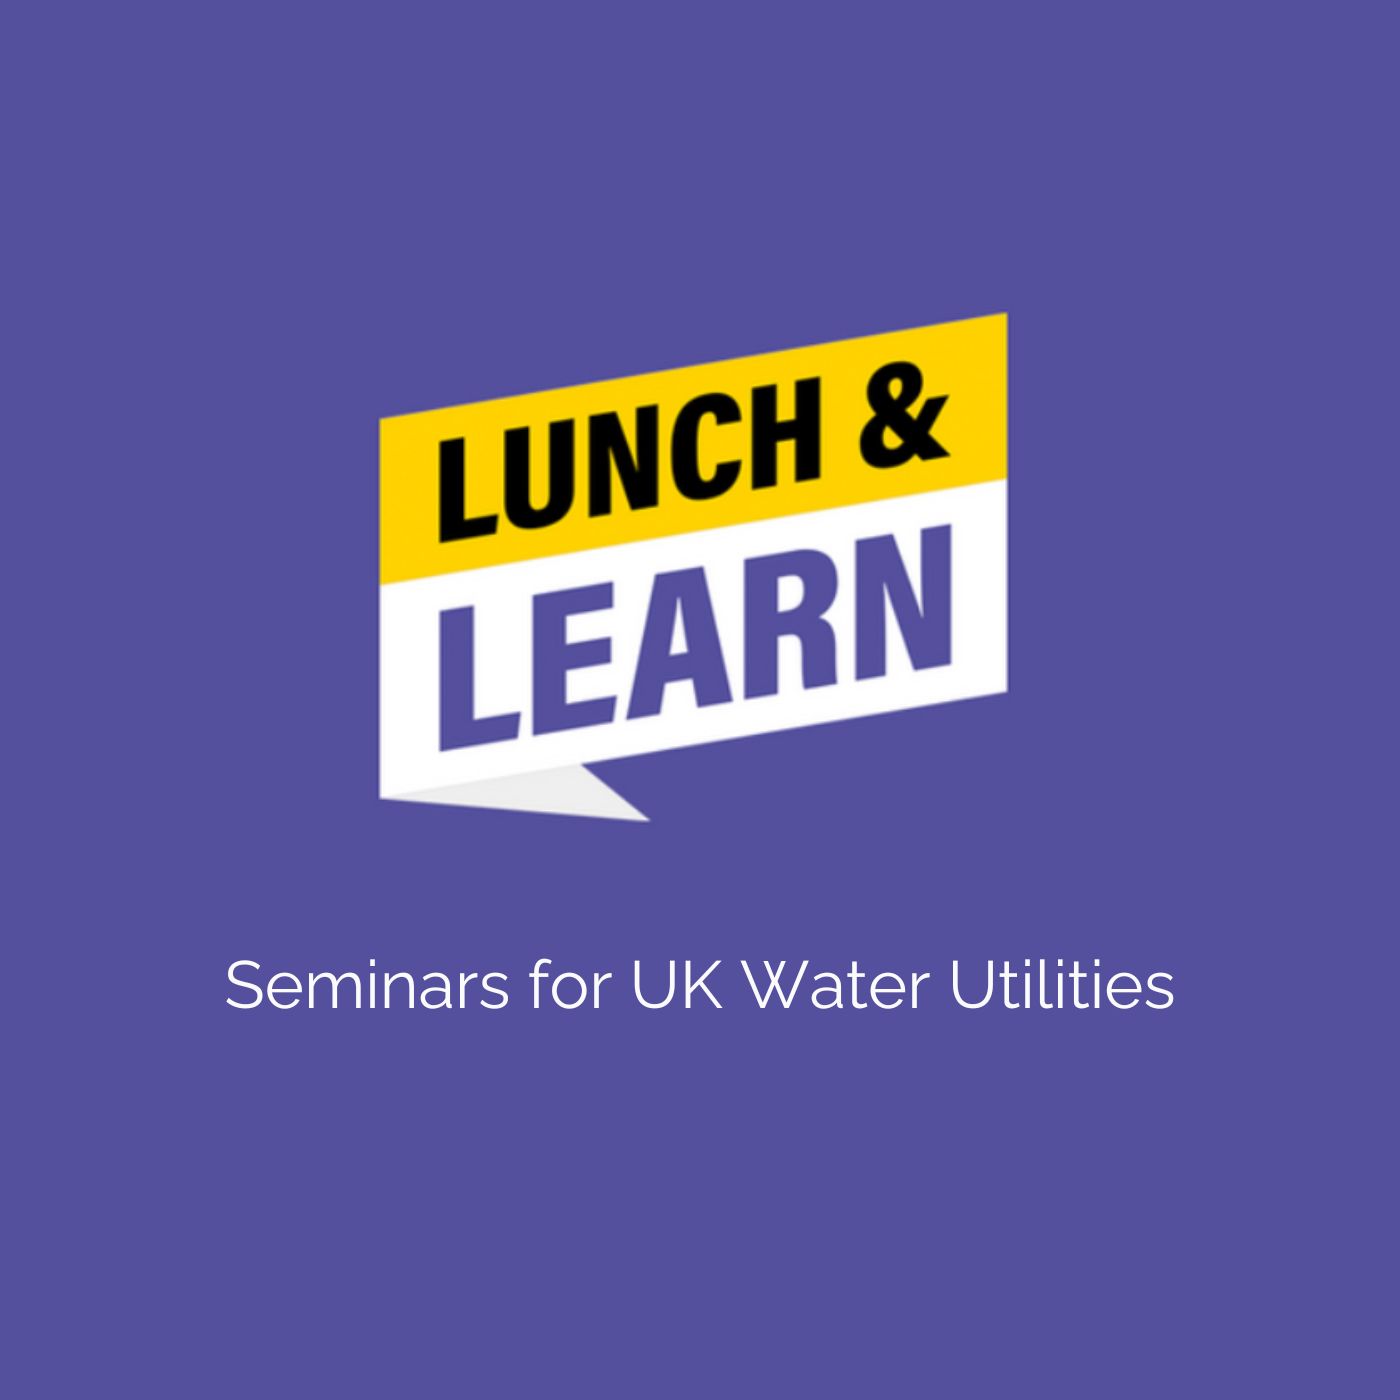 For UK Water Utilities